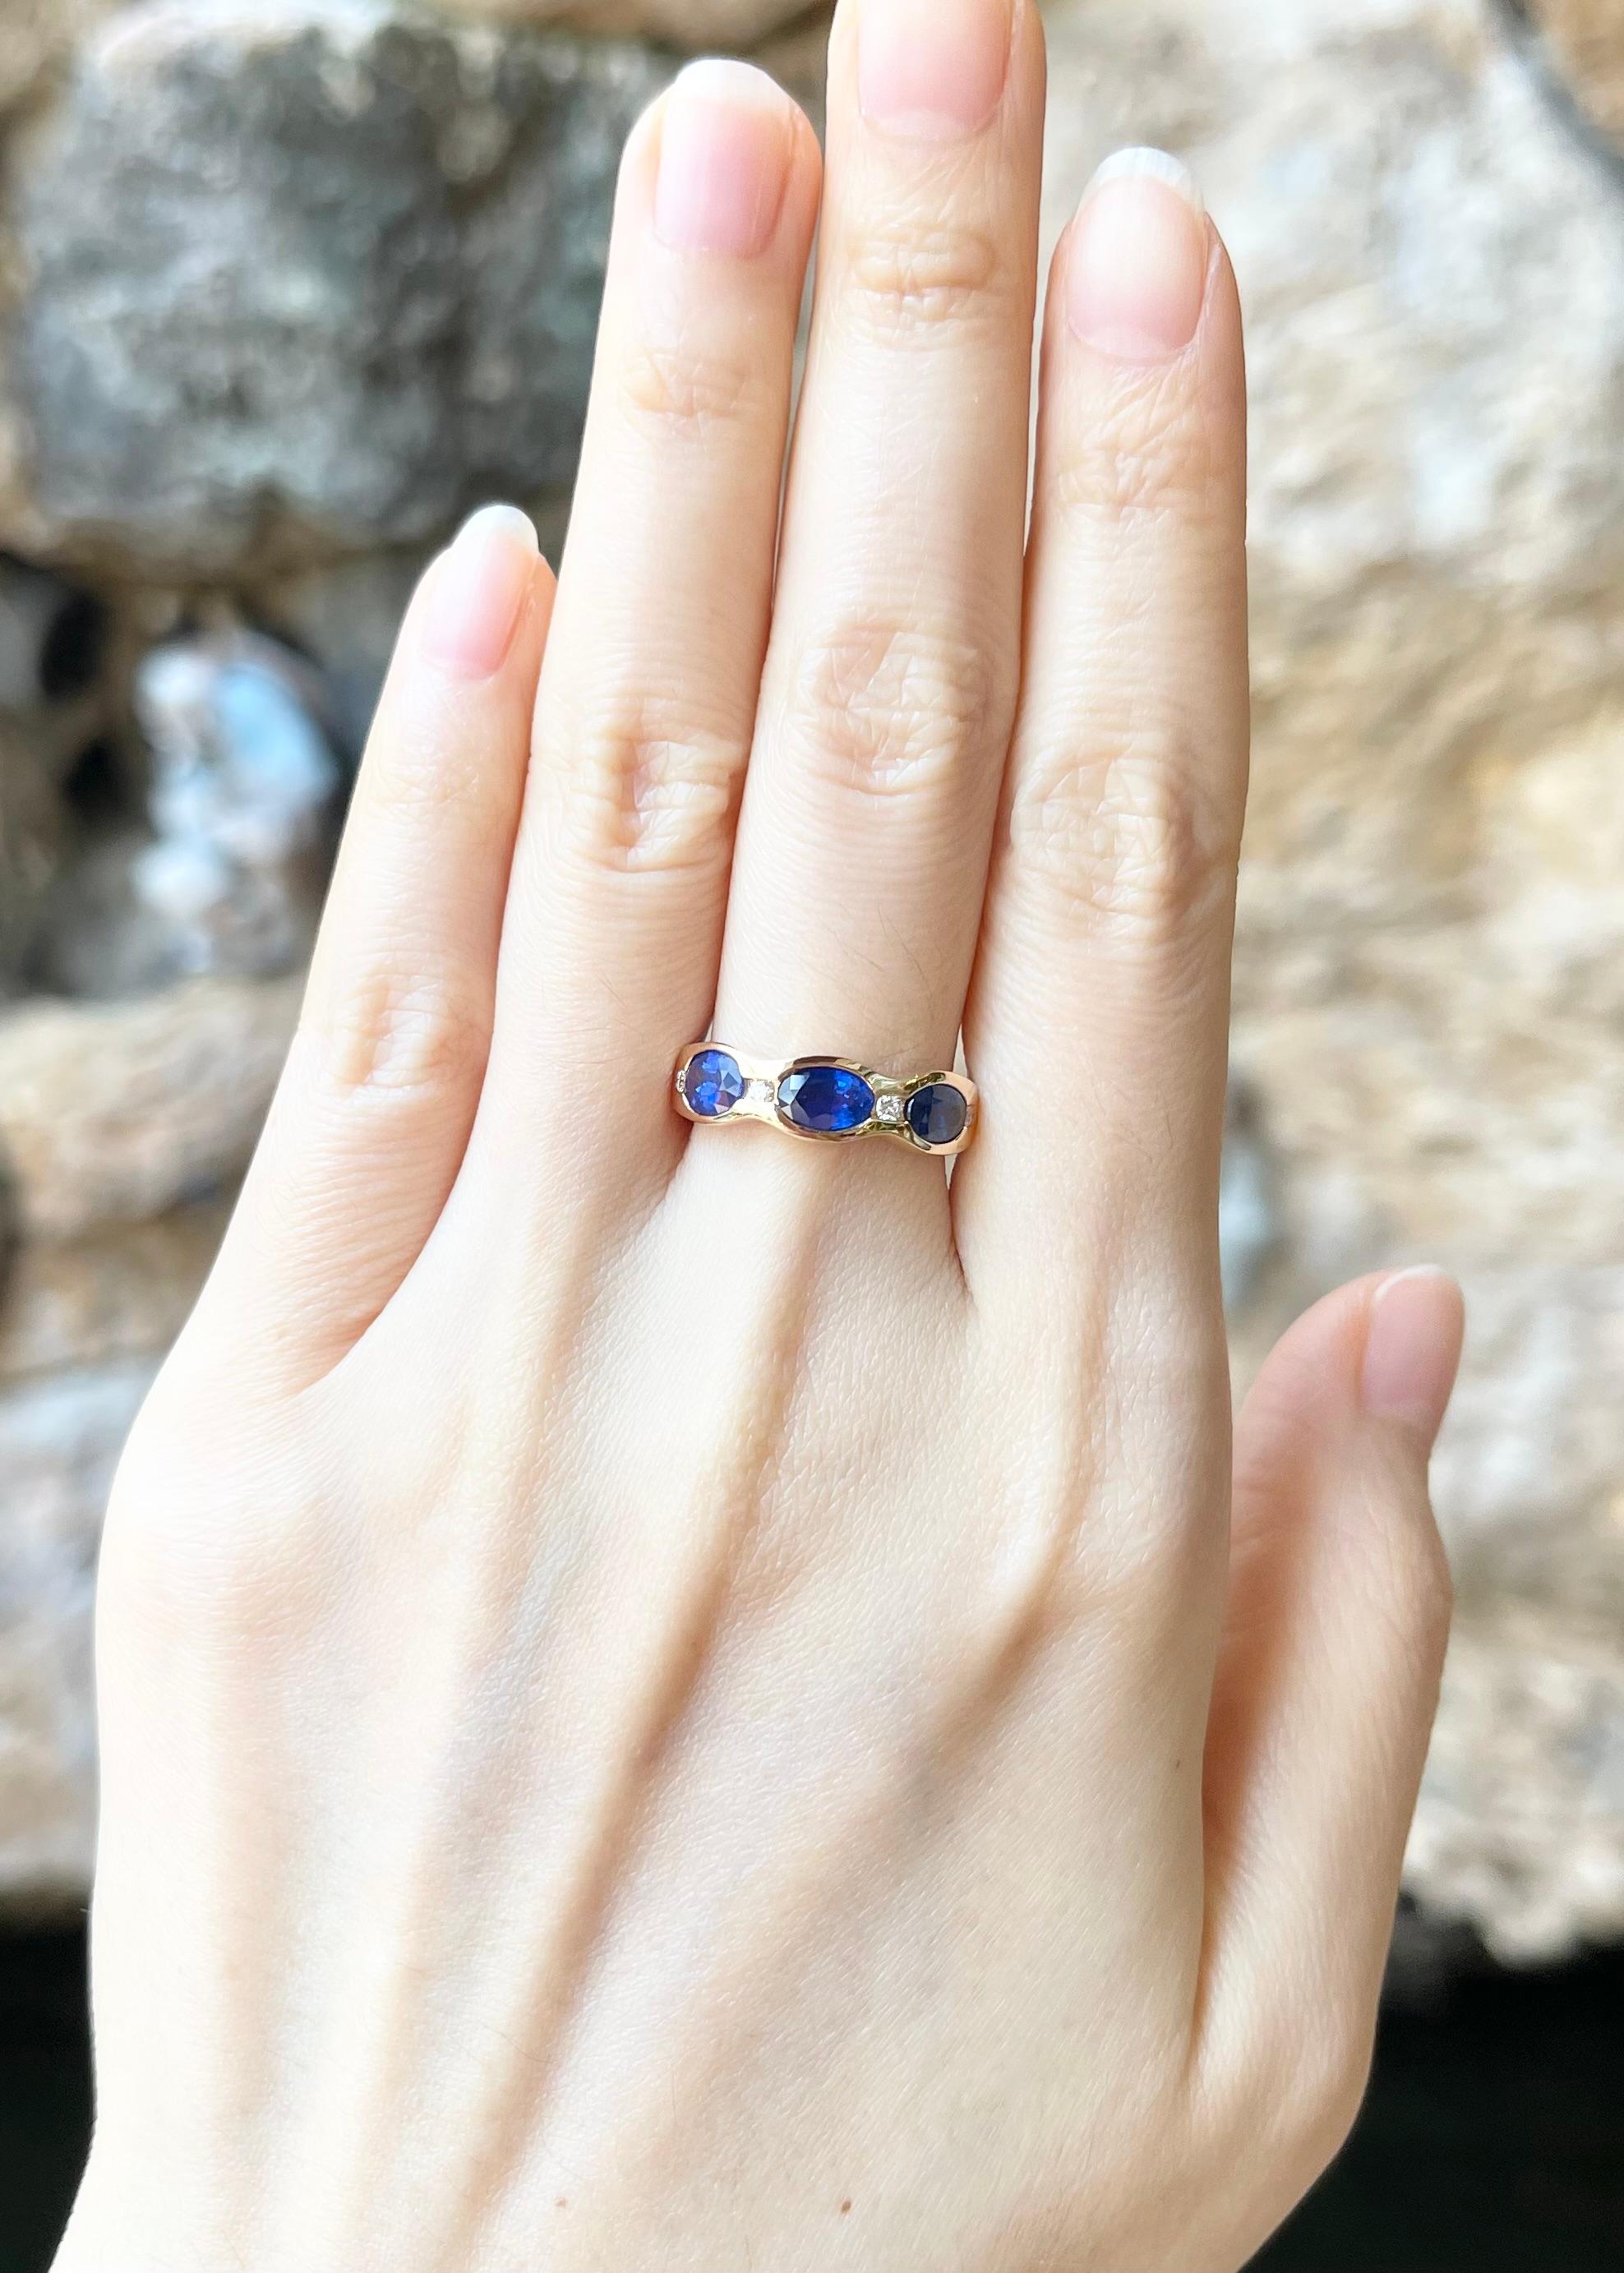 Blauer Saphir 1,60 Karat mit Diamant 0,07 Karat Ring in 18K Rose Gold Fassung

Breite:  1,8 cm 
Länge: 0,6 cm
Ringgröße: 55
Gesamtgewicht: 4,30 Gramm

